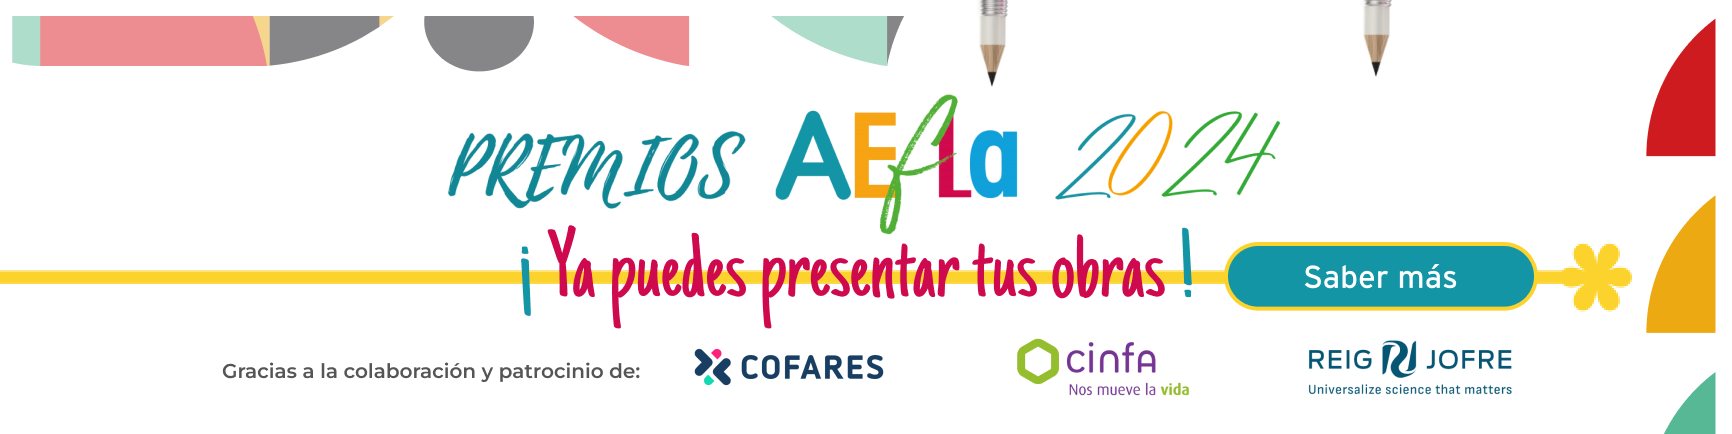 Premios AEFLA 2024